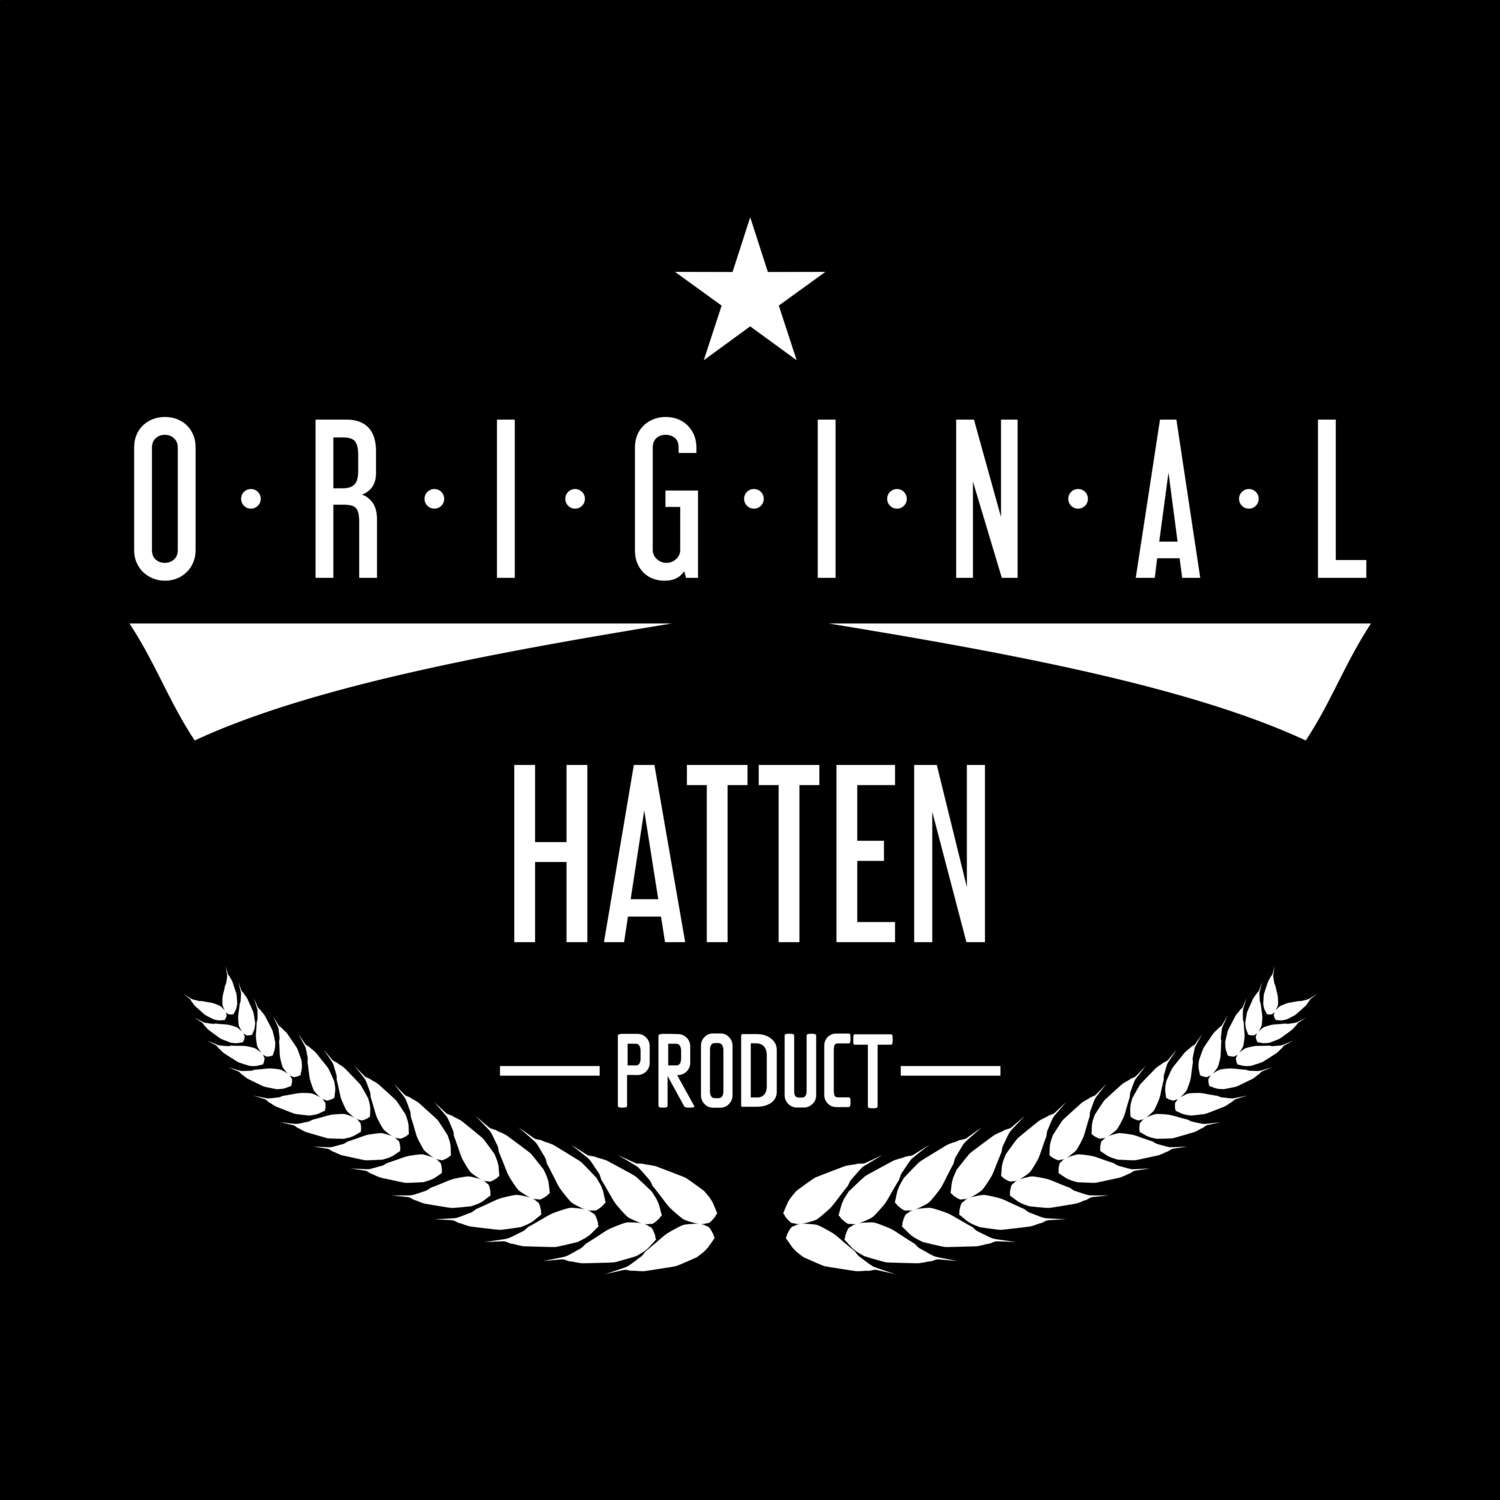 Hatten T-Shirt »Original Product«